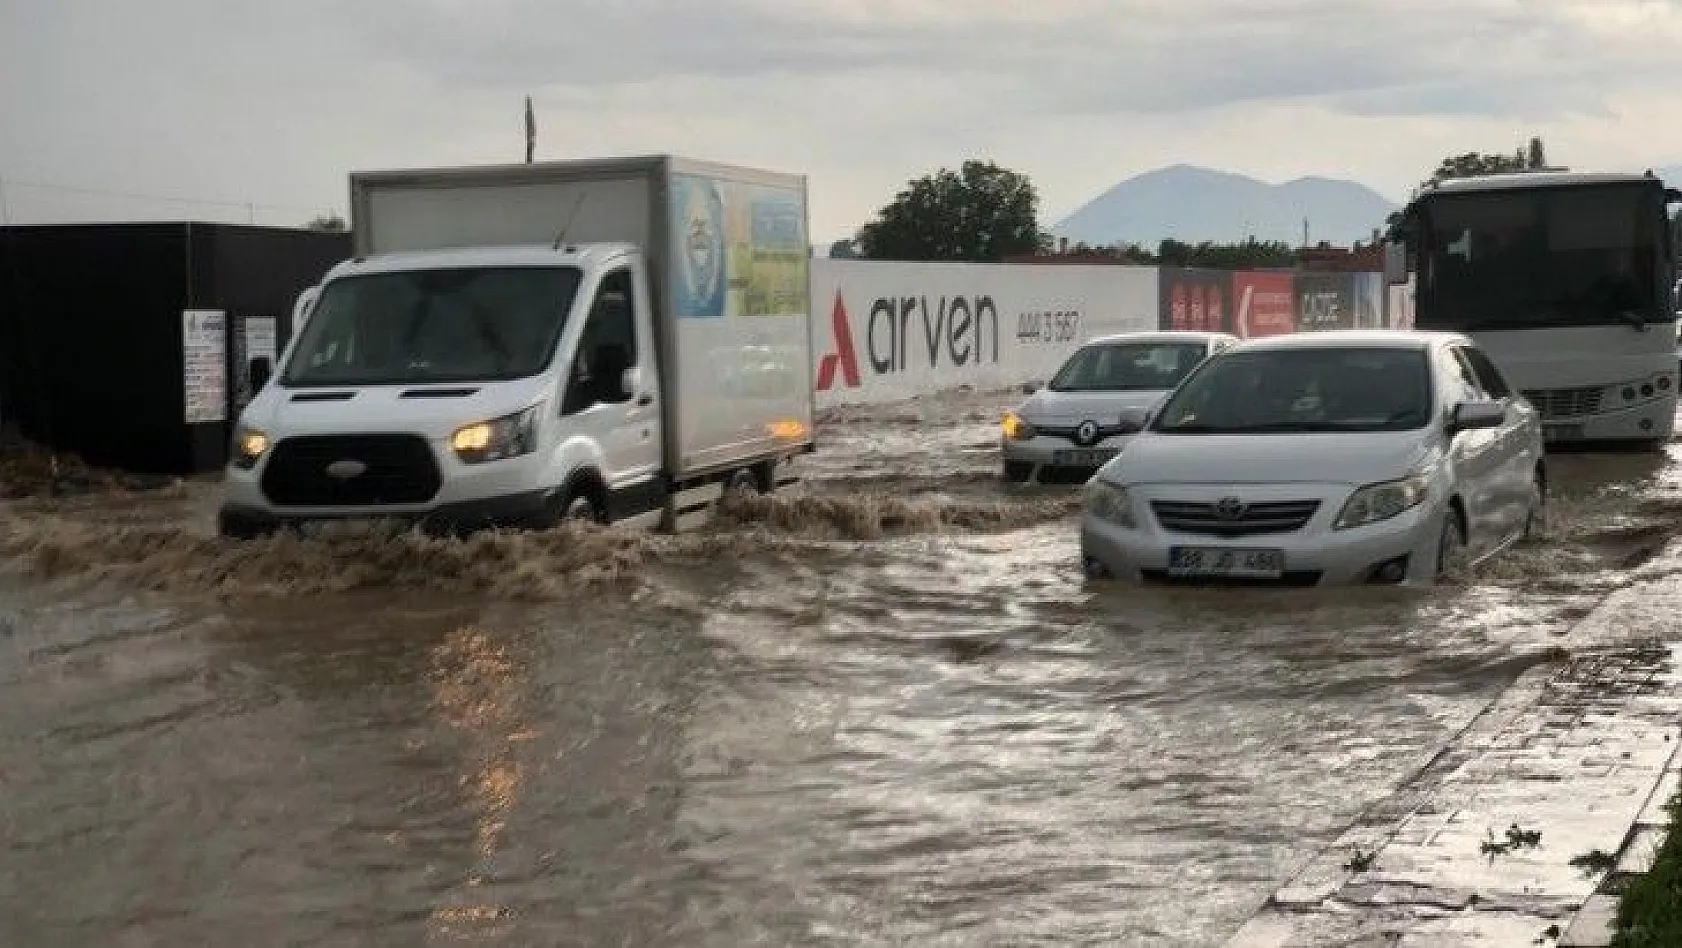 Kayseri'de sağanak yağış etkili oldu, araçlar yolda kaldı